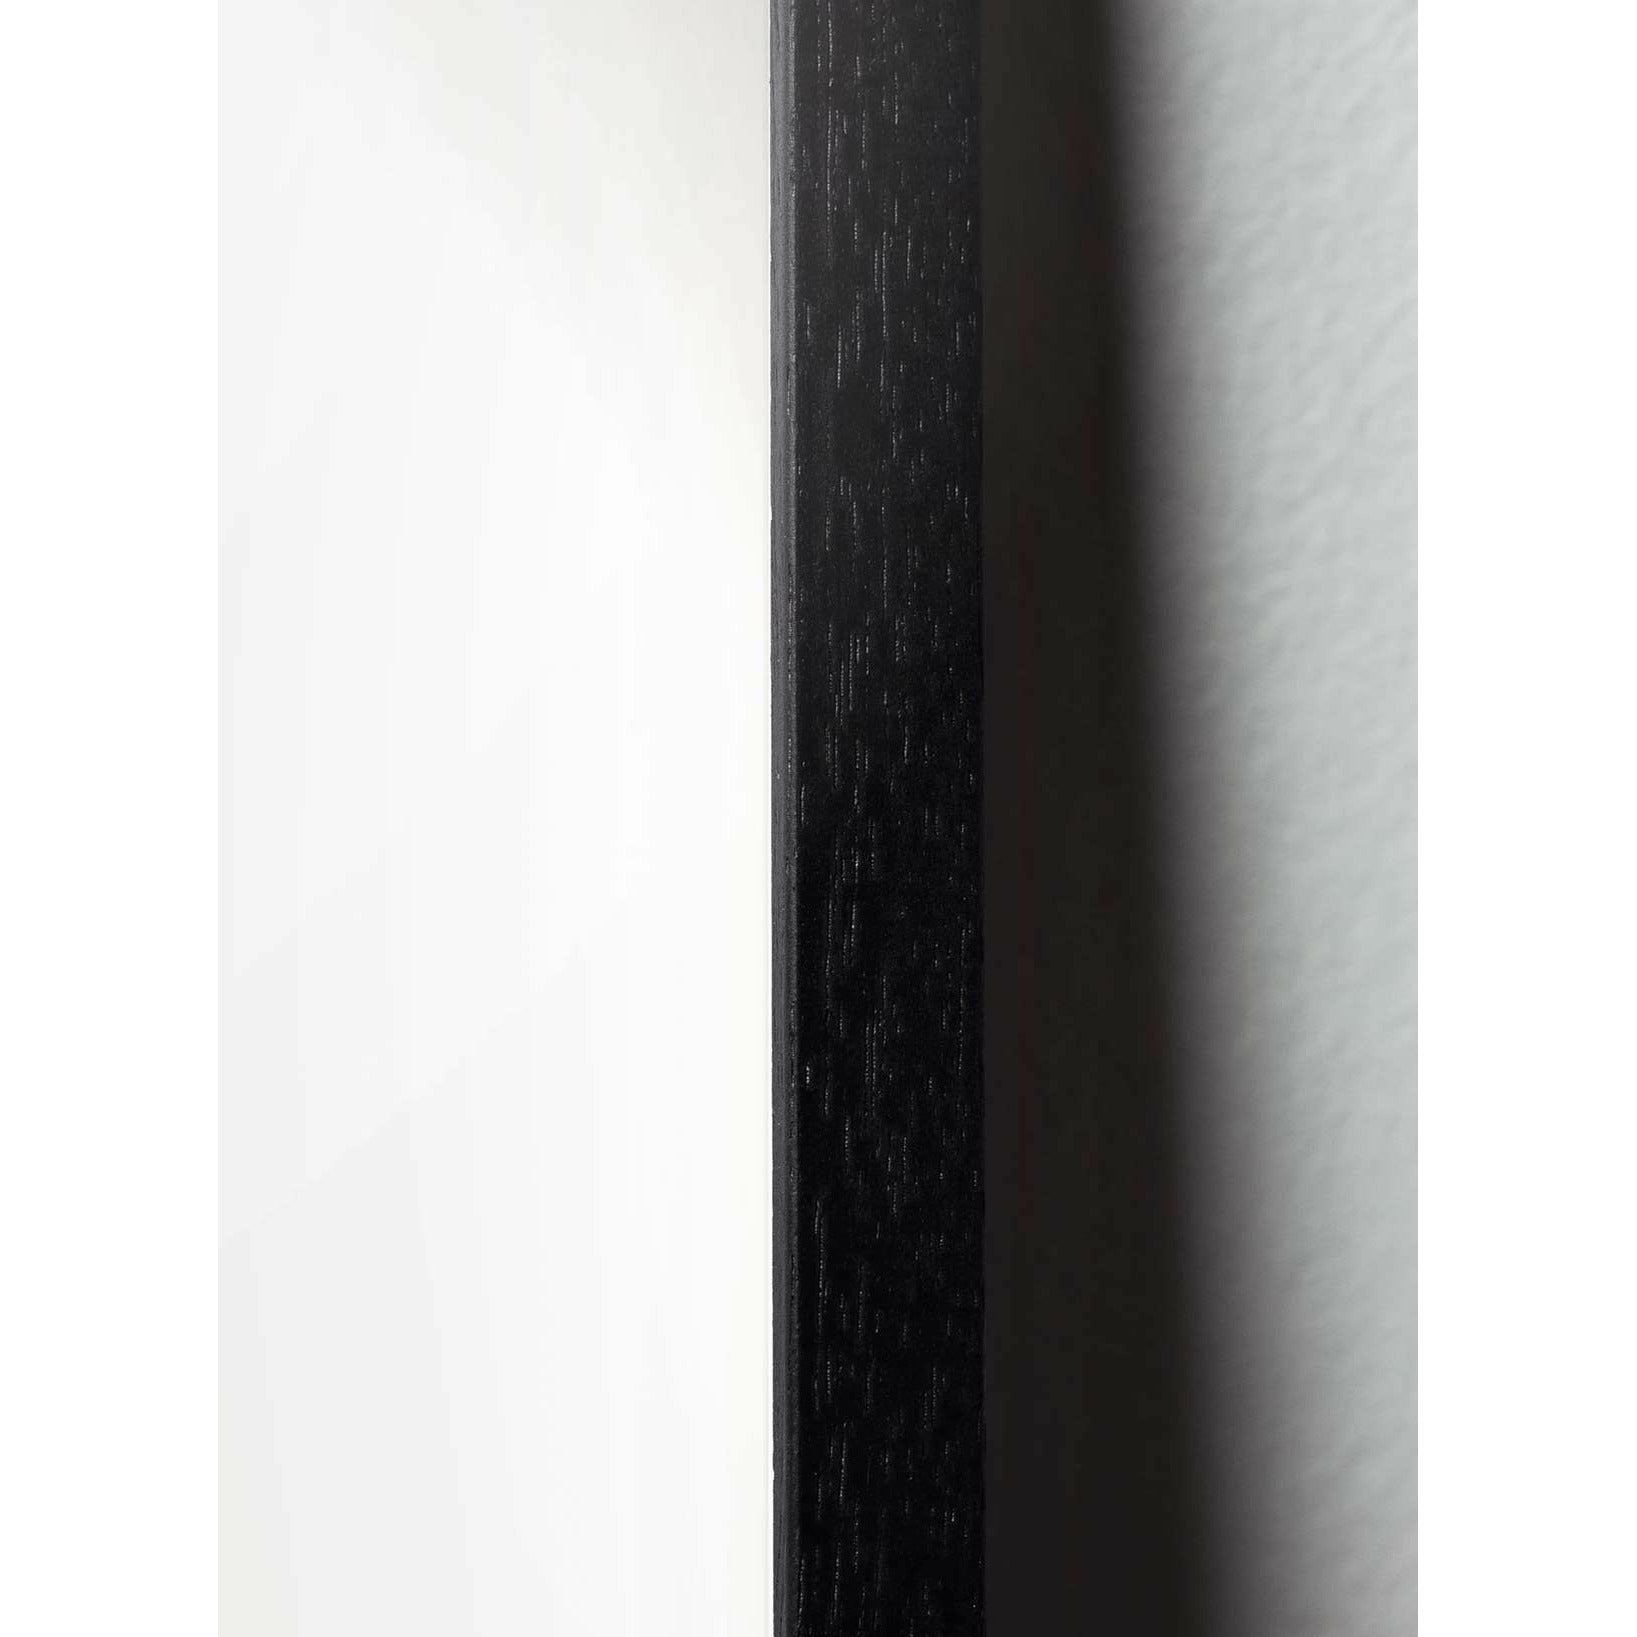 Plakát ikony mozkového designu, rám vyrobený z černého lakovaného dřeva 50 x70 cm, šedá